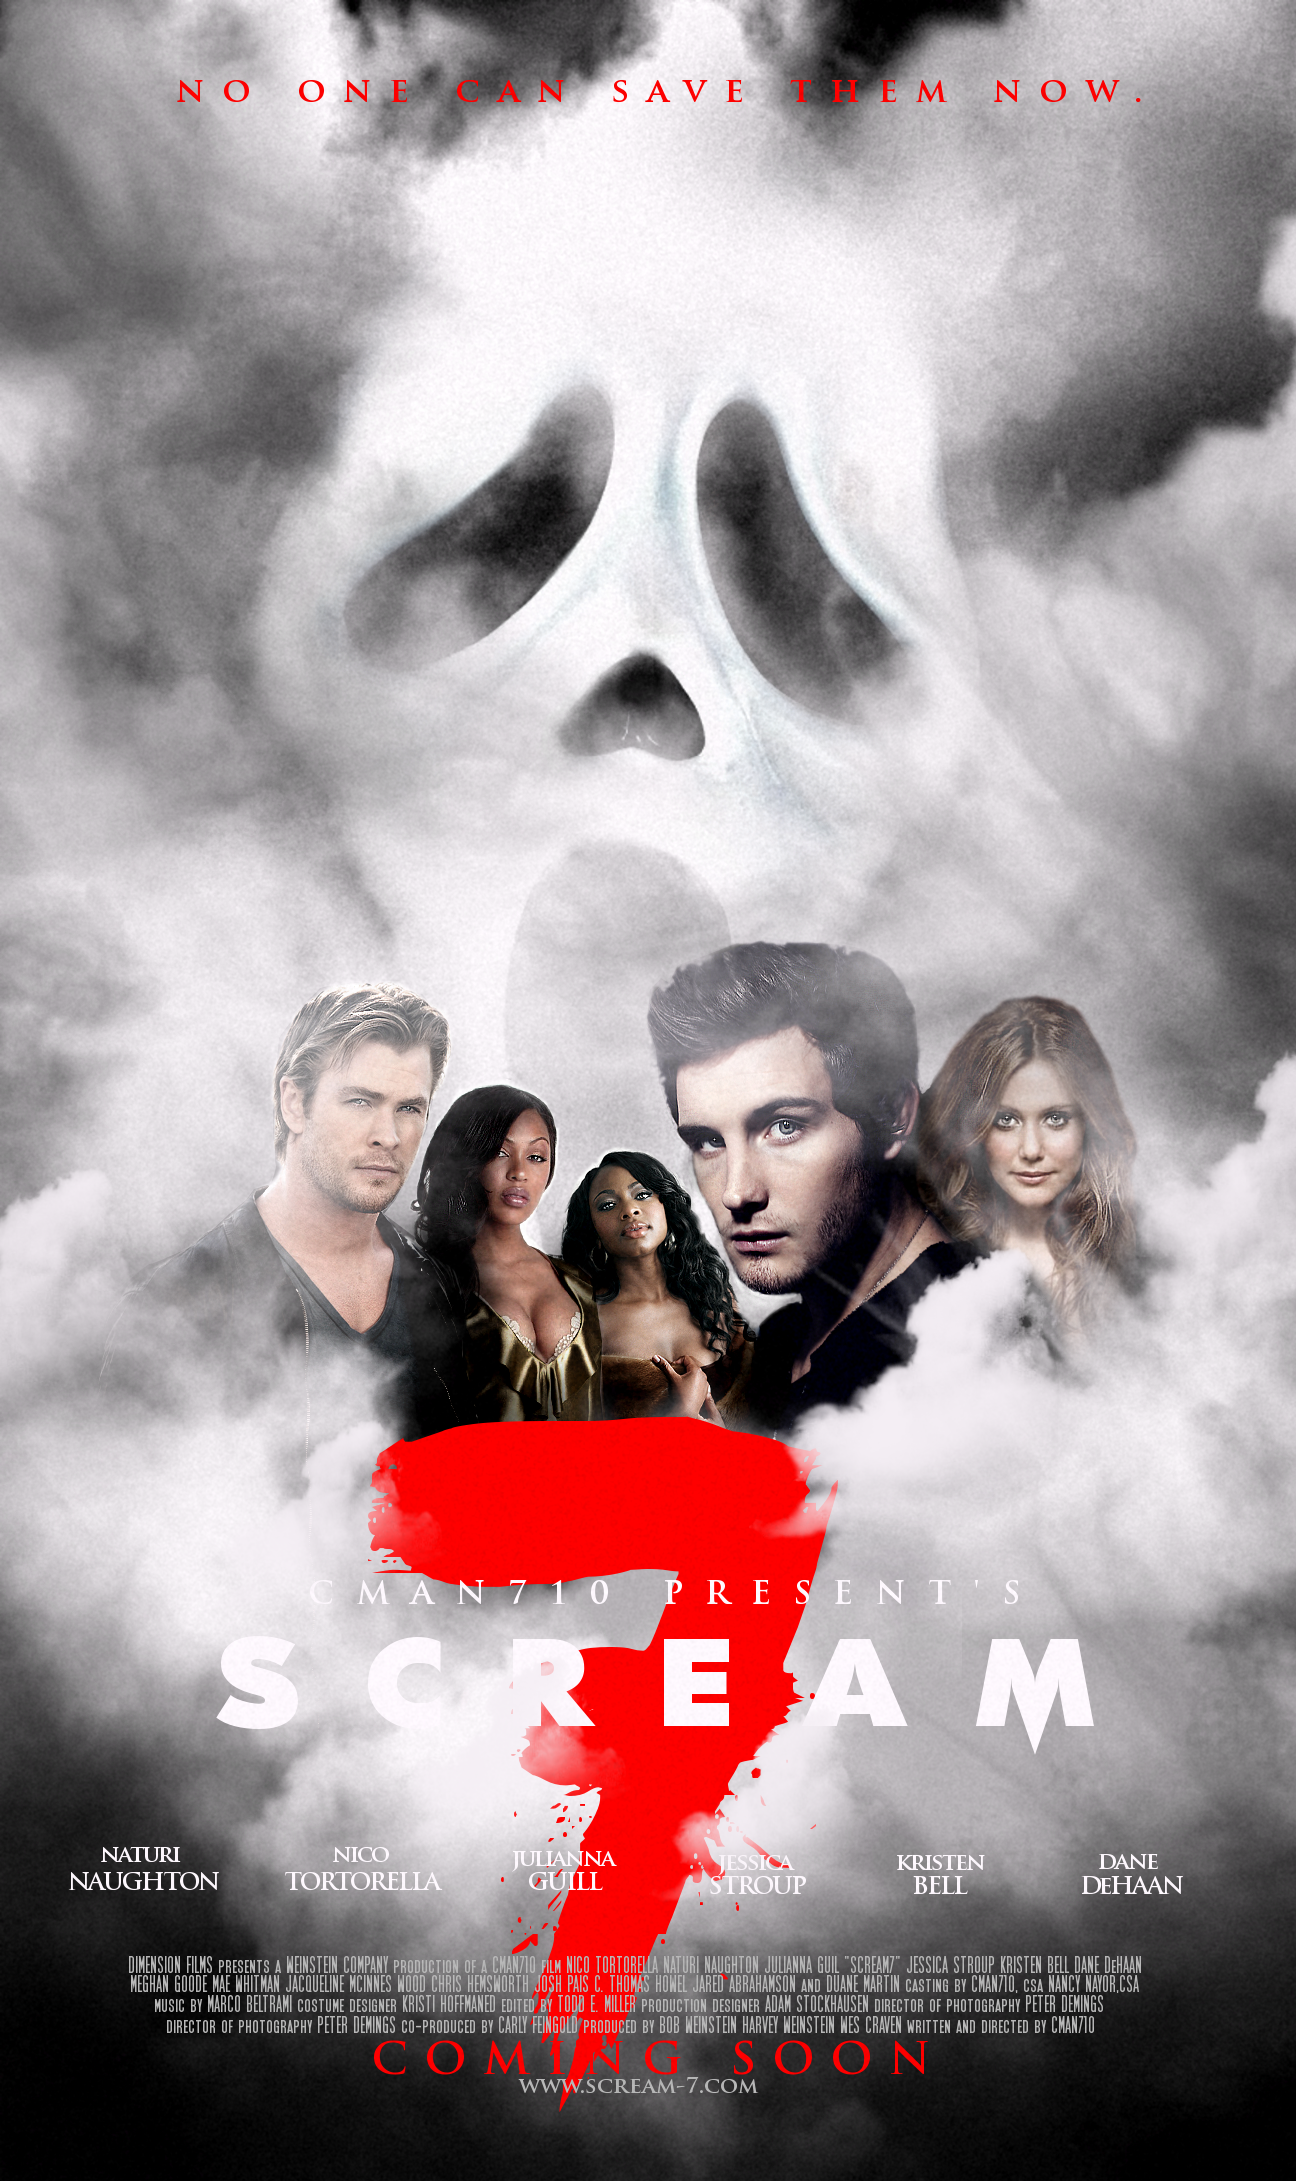 scream 7